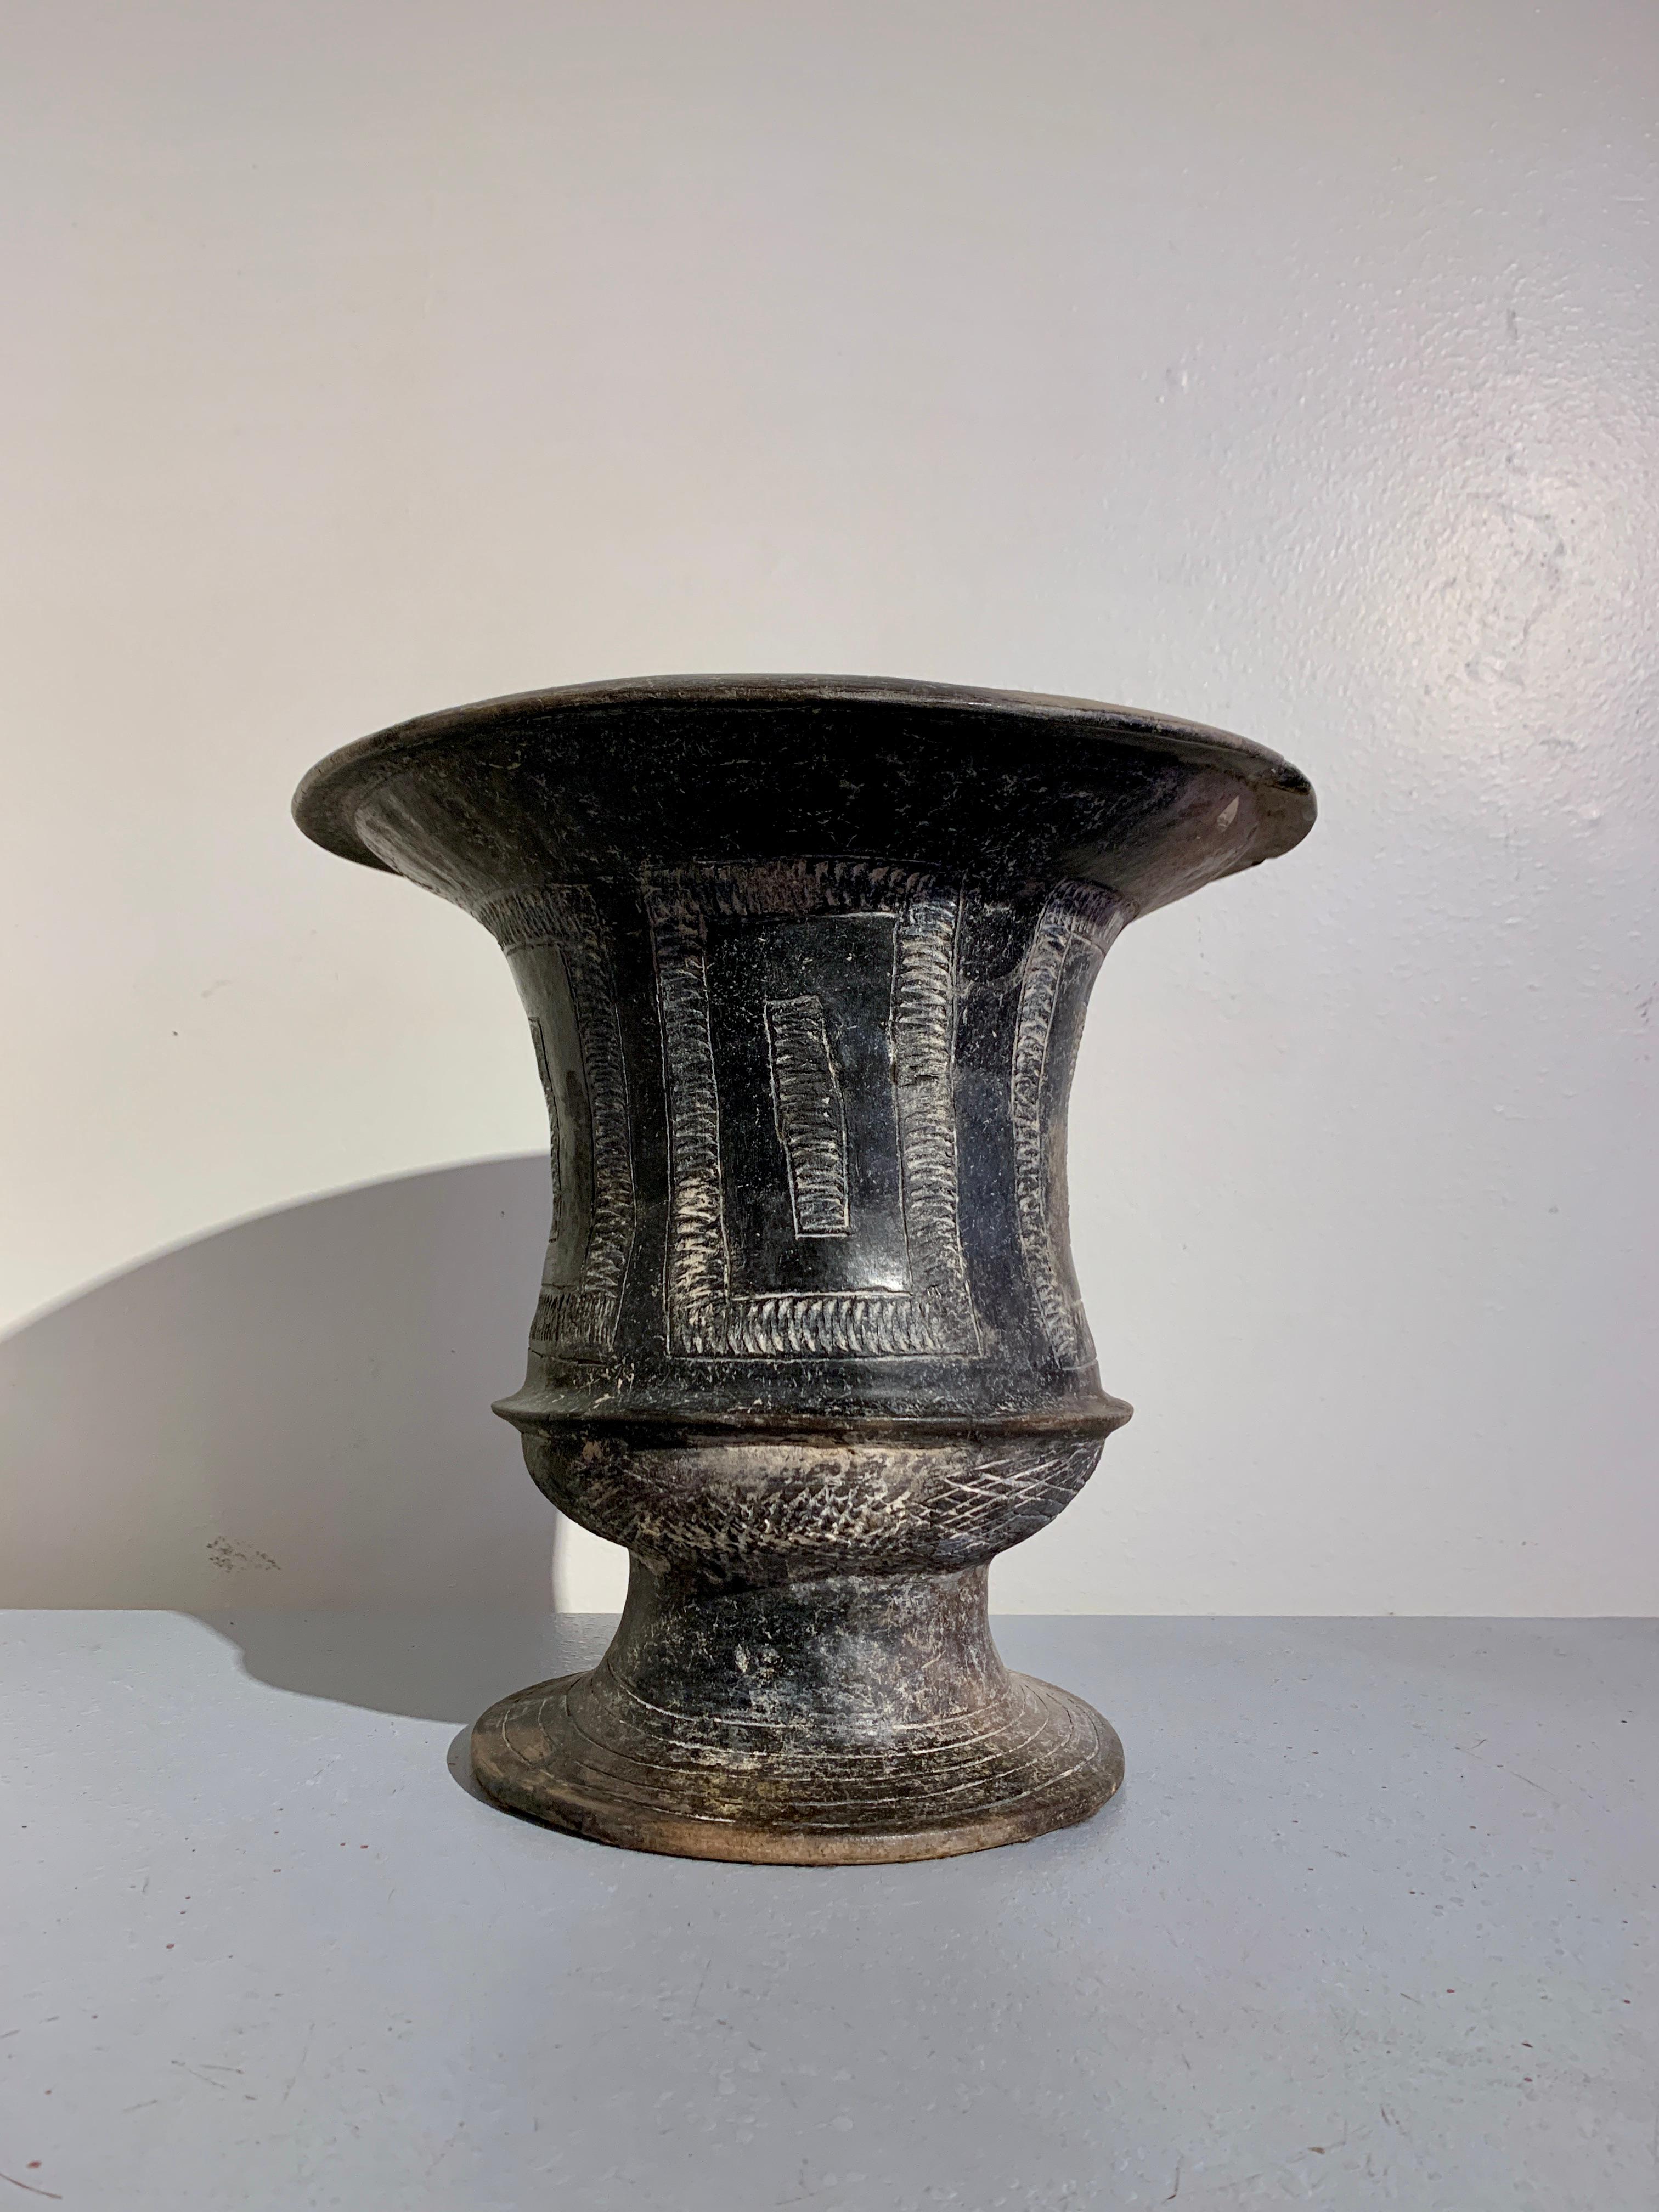 Grand et spectaculaire récipient en poterie noire brunie de la culture Ban Chiang, avec des motifs géométriques incisés, période précoce, vers 1200 - 800 avant J.-C., plateau de Khorat, nord-est de la Thaïlande.

Ce vase aux proportions généreuses